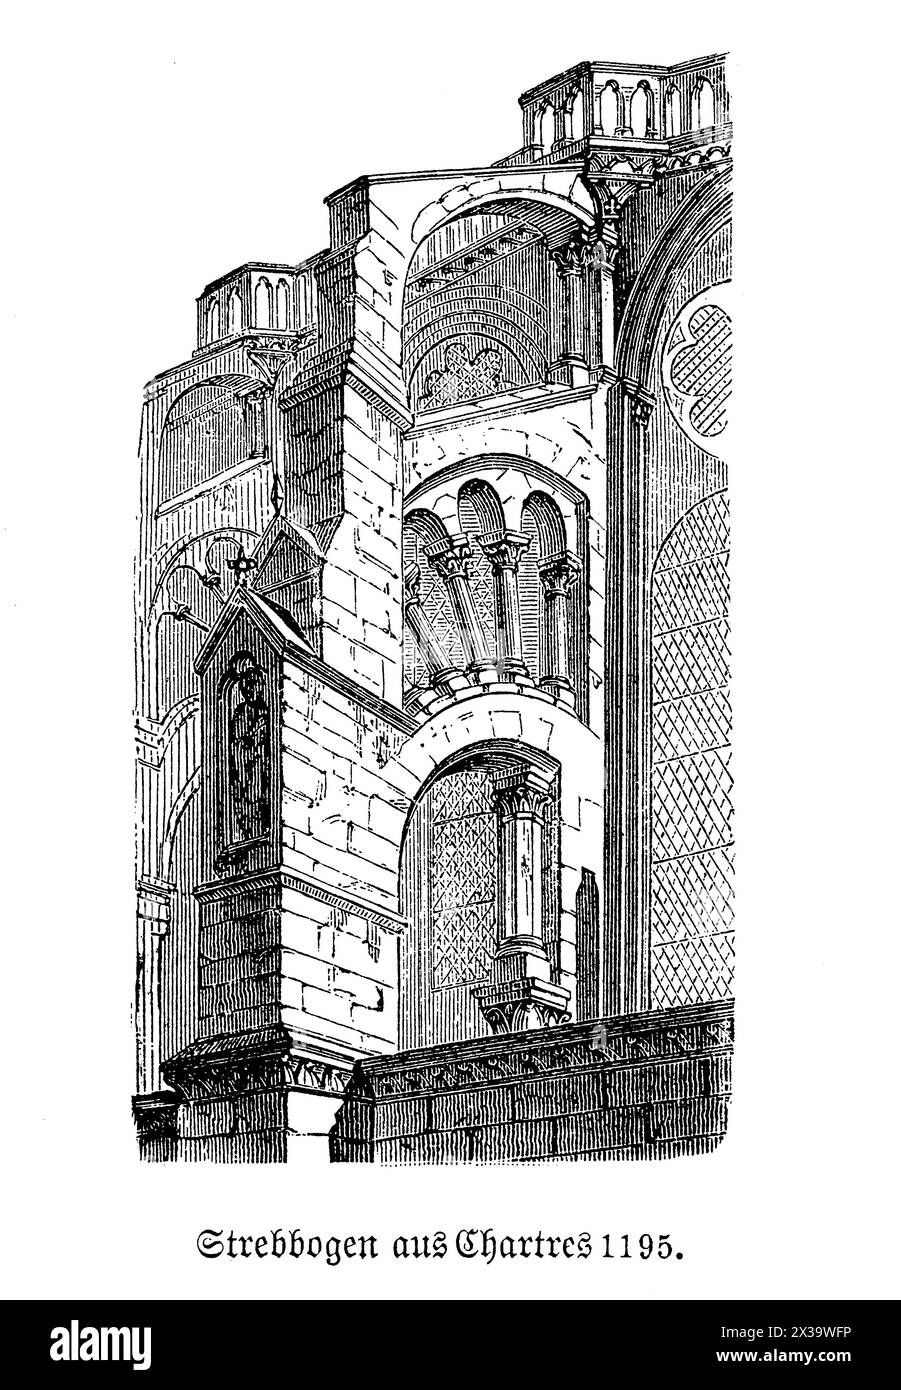 Le contrefort volant de la cathédrale de Chartres est une caractéristique exemplaire de l'architecture gothique, conçu pour soutenir les hauts murs de la cathédrale et permettre des fenêtres plus grandes et plus de lumière. Situé à Chartres, en France, cet élément architectural est à la fois fonctionnel et esthétique, caractérisé par son design arqué qui s'étend de la structure principale à une jetée. Les contreforts sont non seulement cruciaux pour l'intégrité structurelle, mais aussi magnifiquement décorés, avec souvent des sculptures complexes et des statues qui rehaussent l'aspect majestueux de la cathédrale Banque D'Images